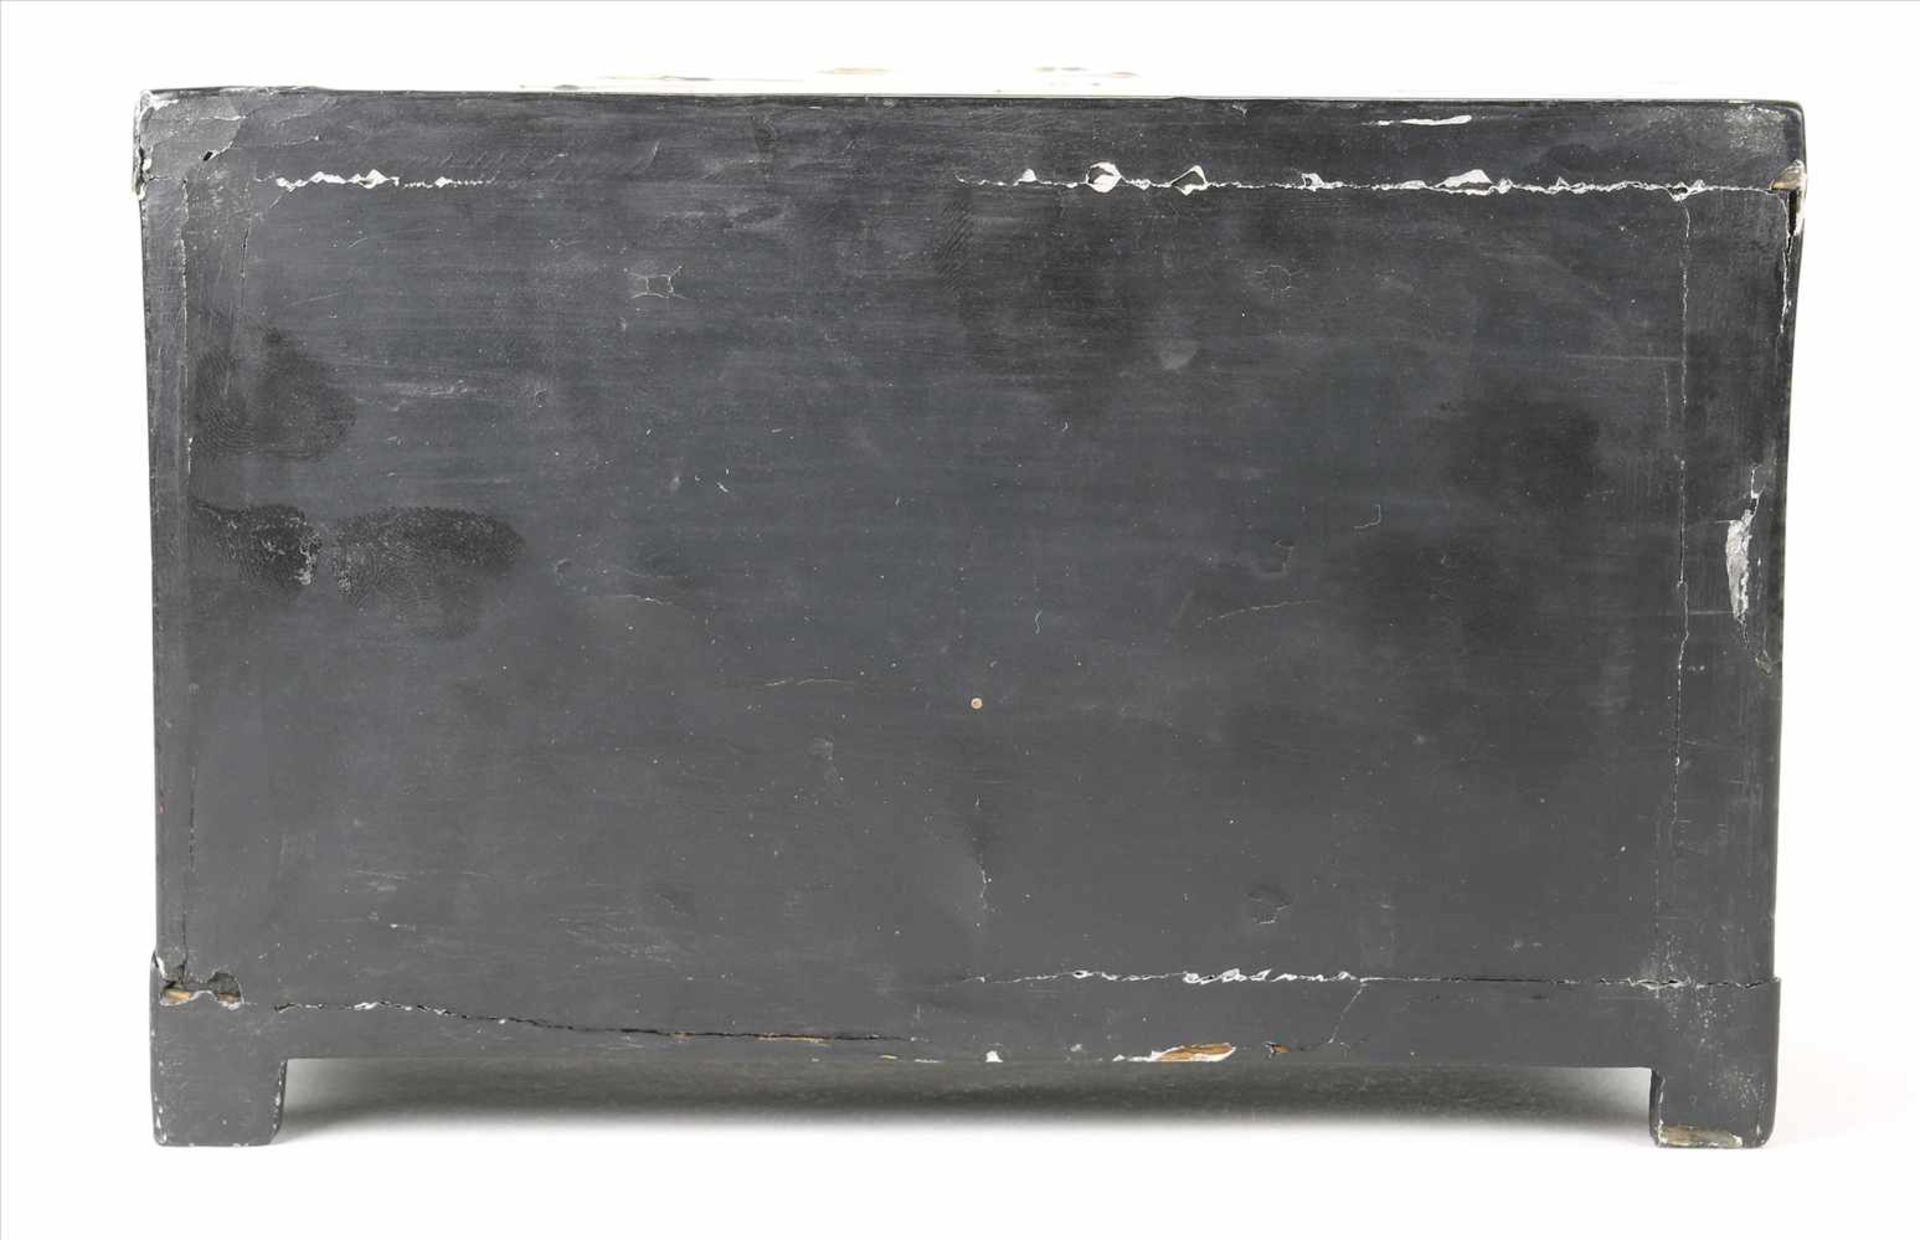 ModellschränkchenChina um 1920. Schwarzlack auf Holz mit aufwendigen Perlmuttintarsien und Bemalung. - Bild 5 aus 5